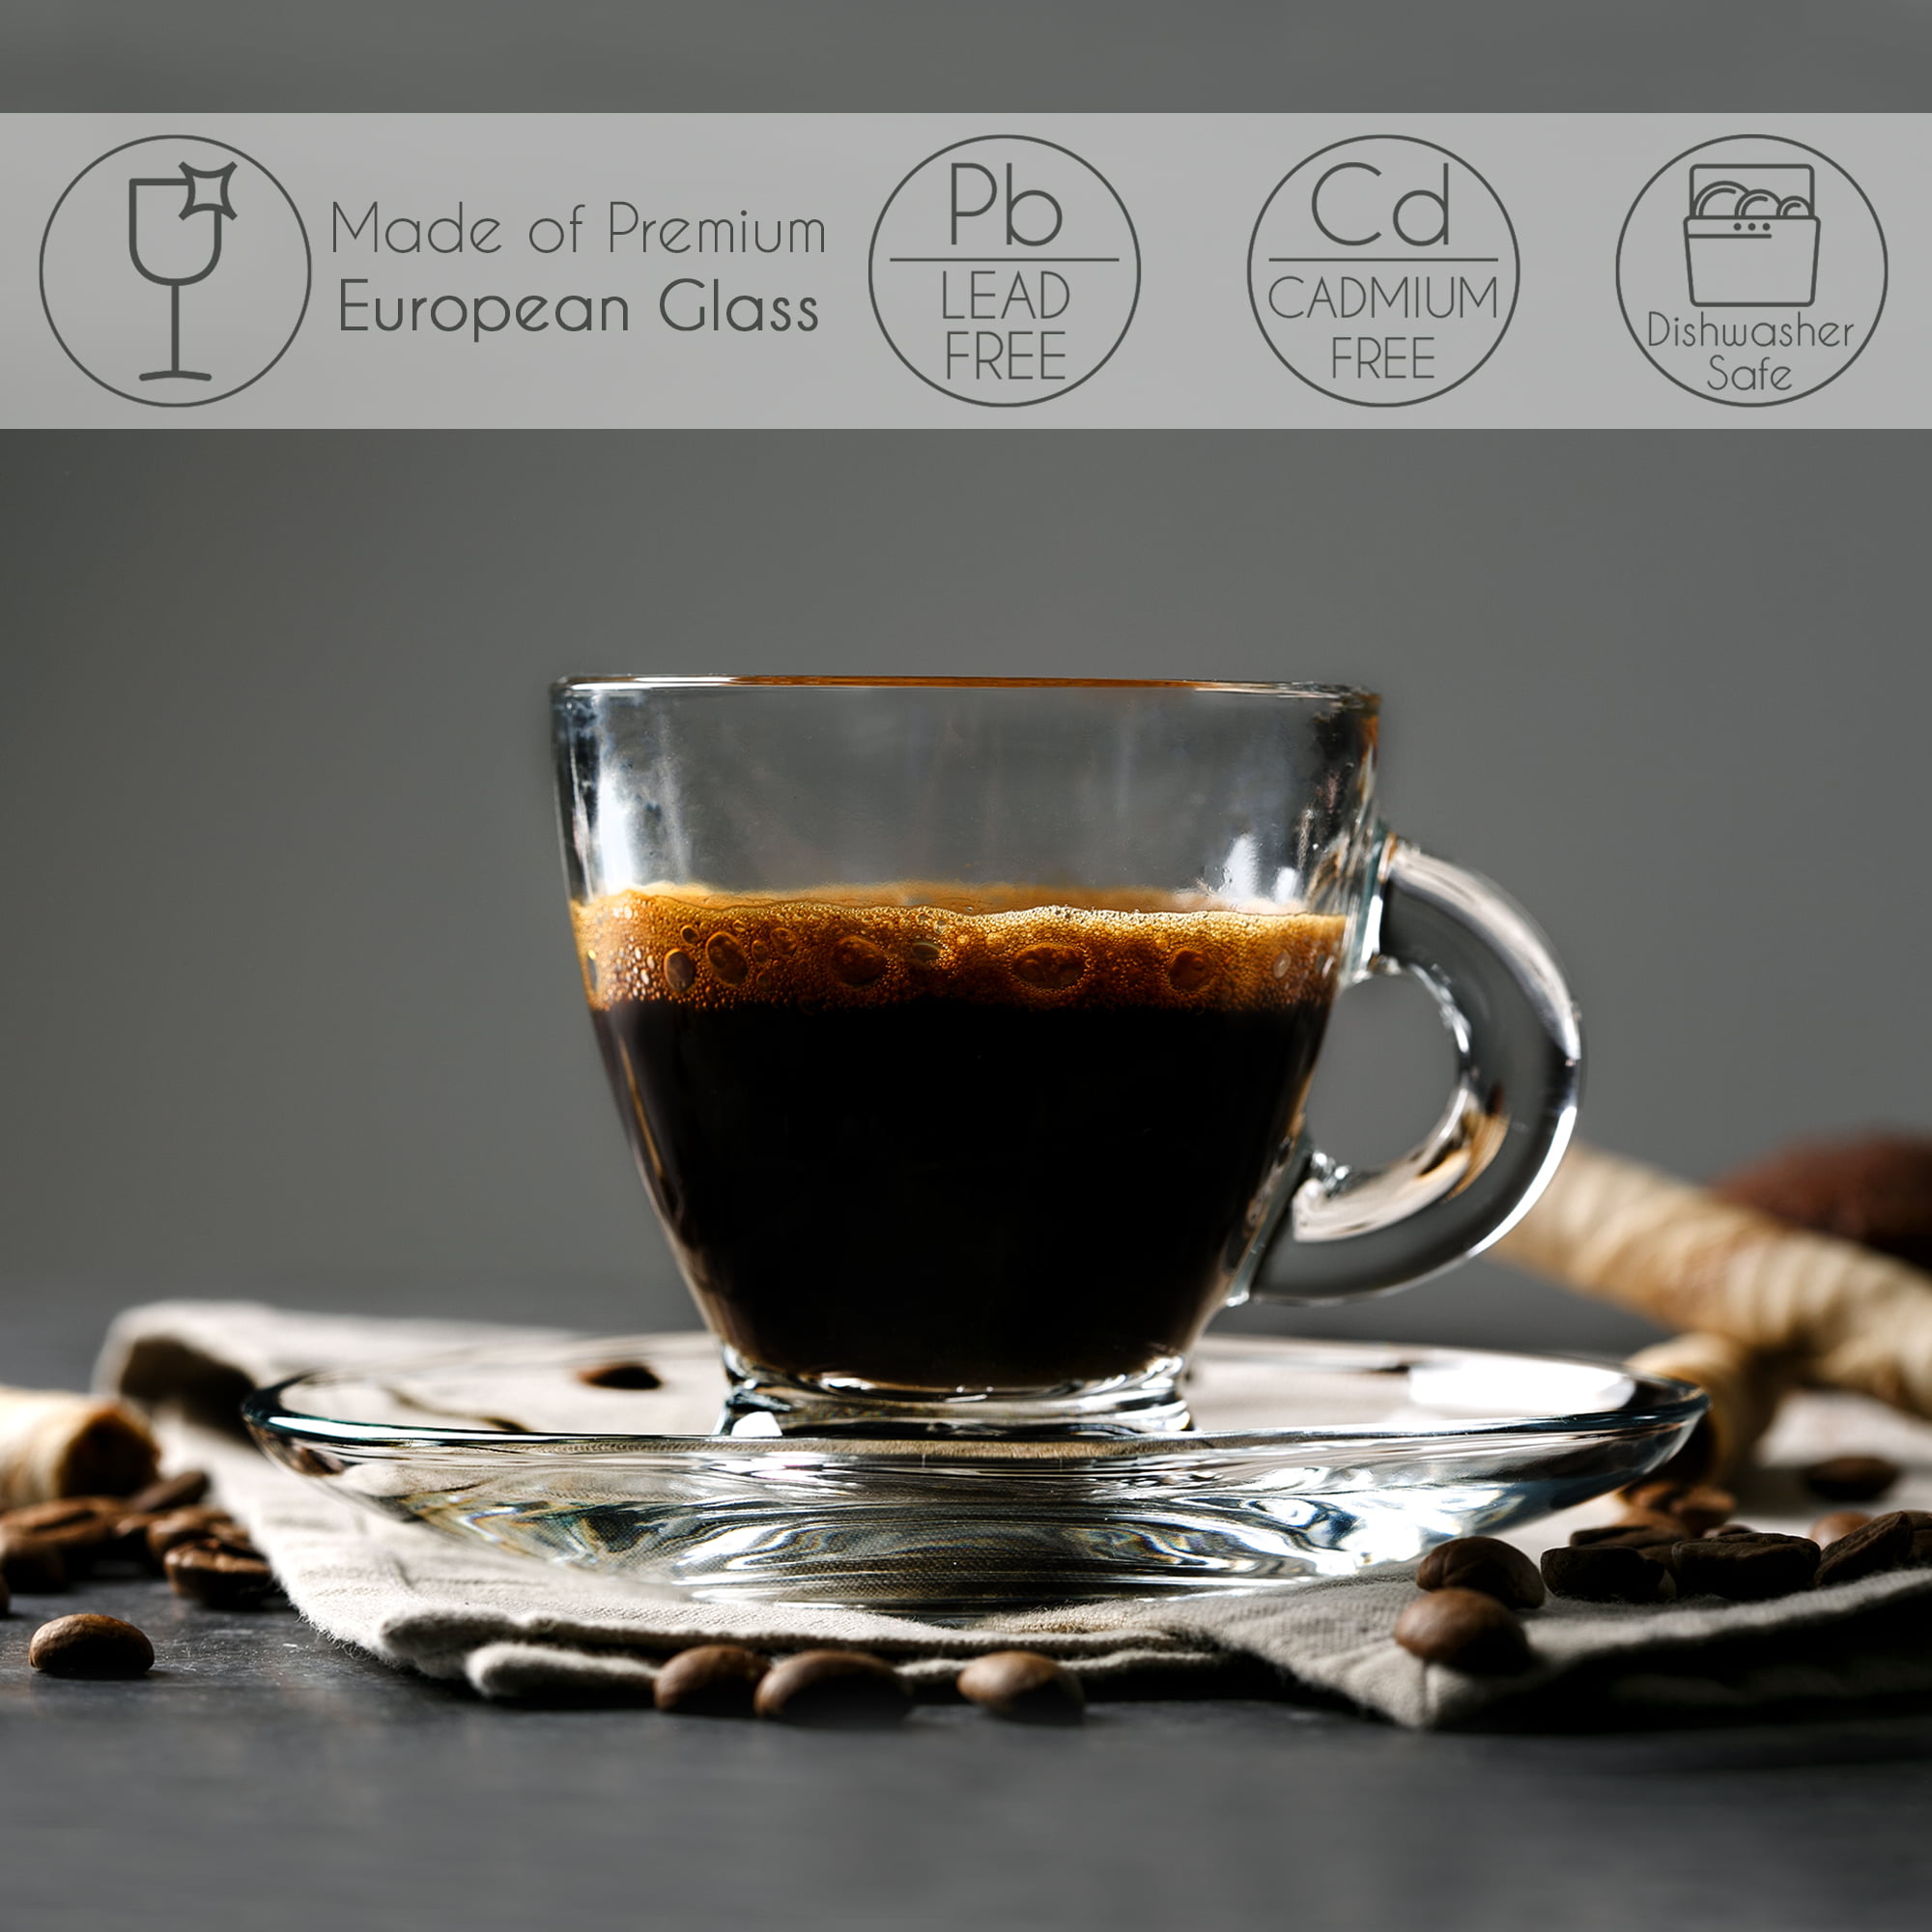 Glass Espresso Maker Medium 6 c/ Greca de Cristal Mediana, 6 tz